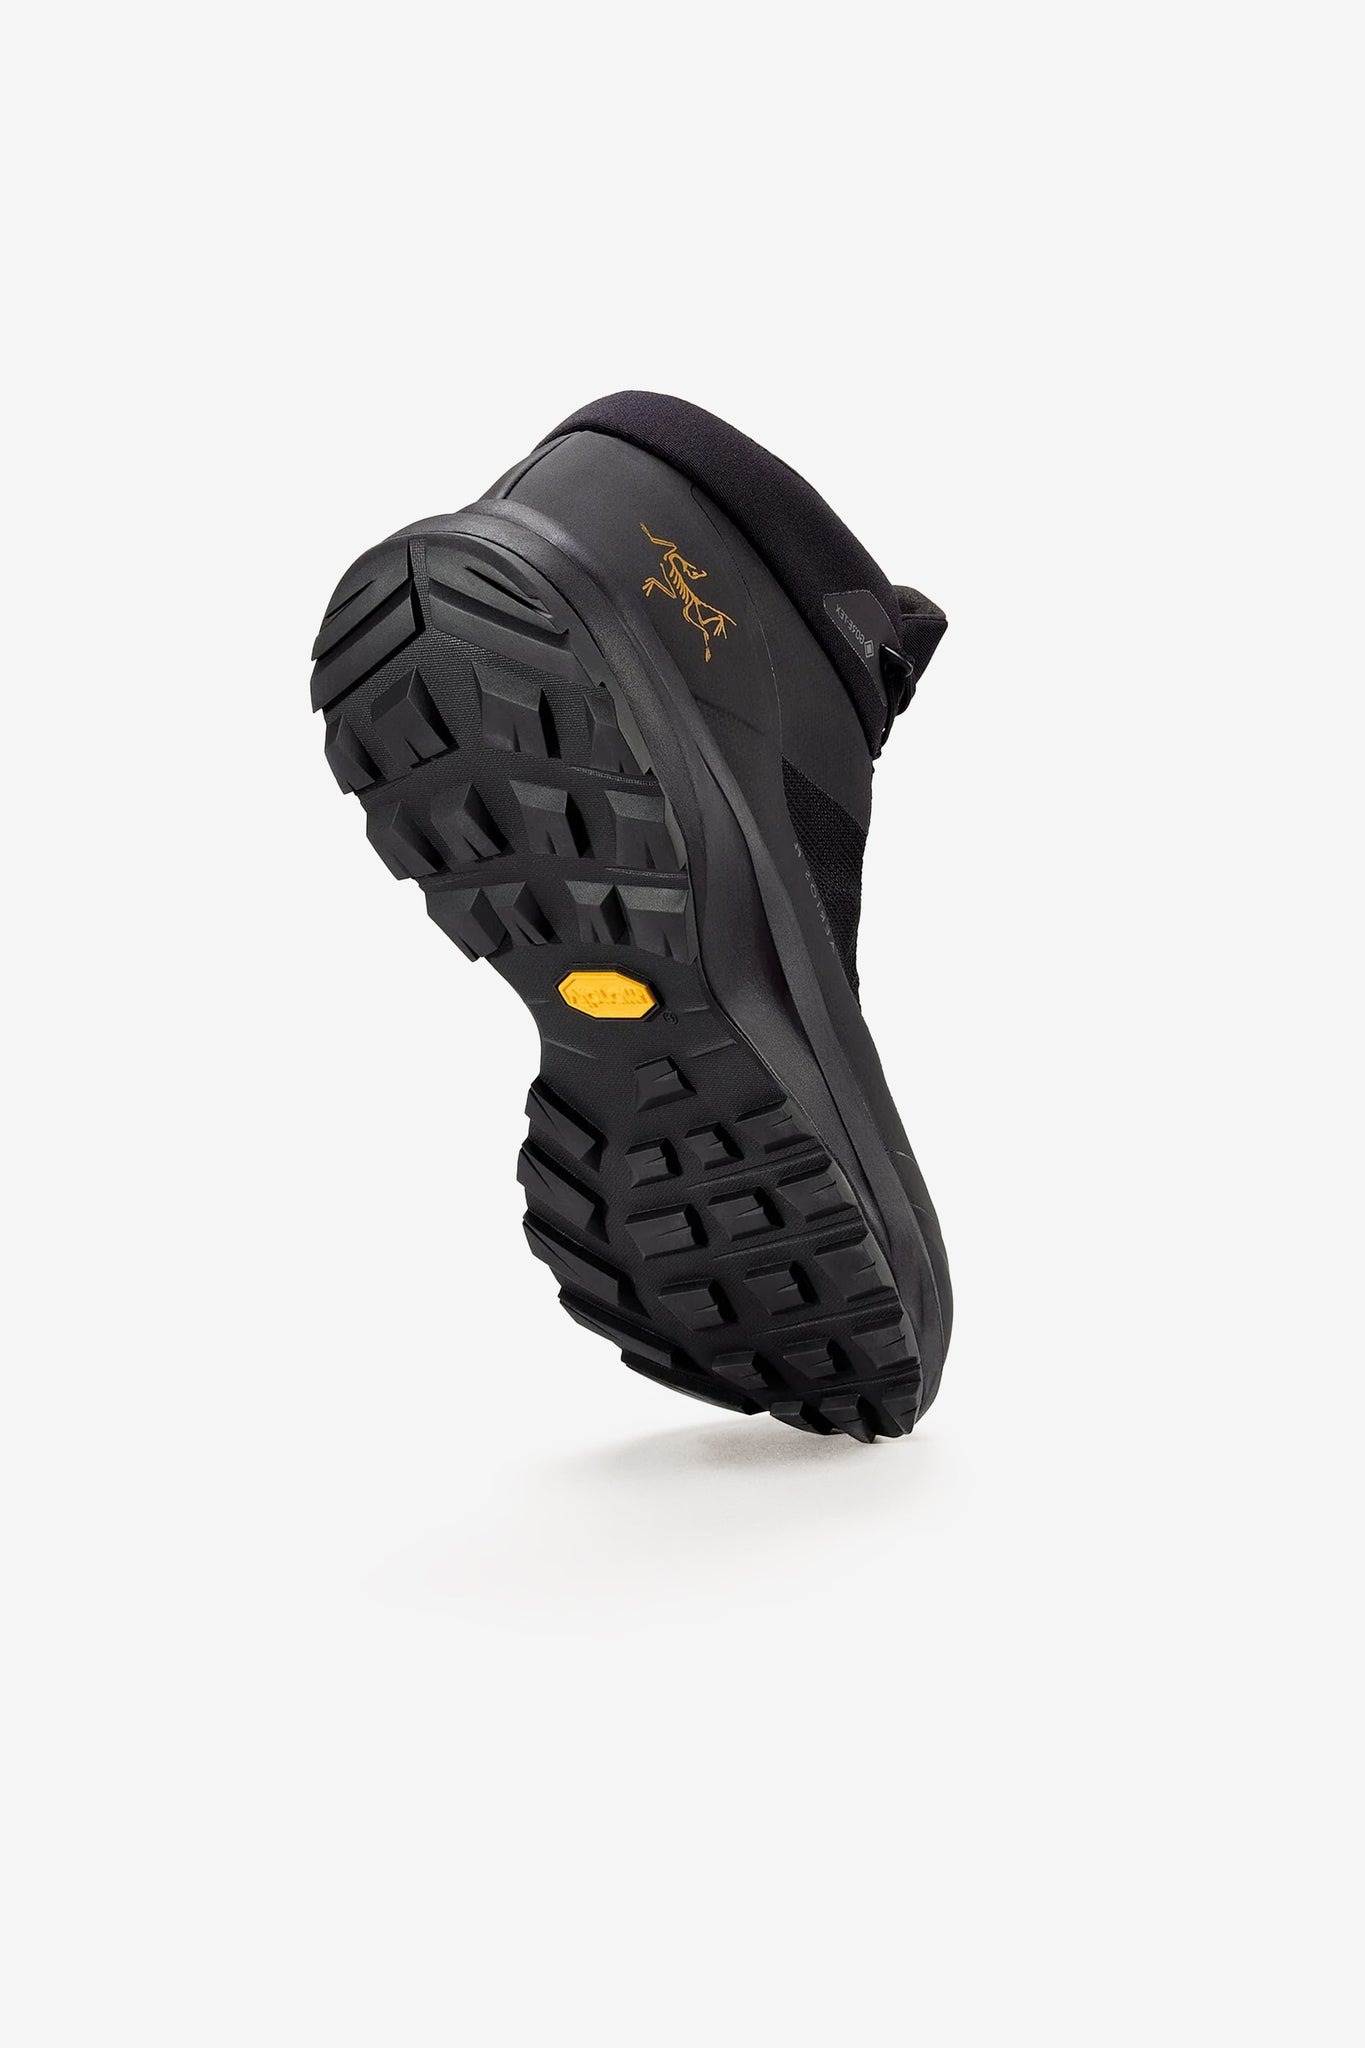 Arc'teryx Men's Aerios FL 2 Mid GTX Shoe in Black/Black